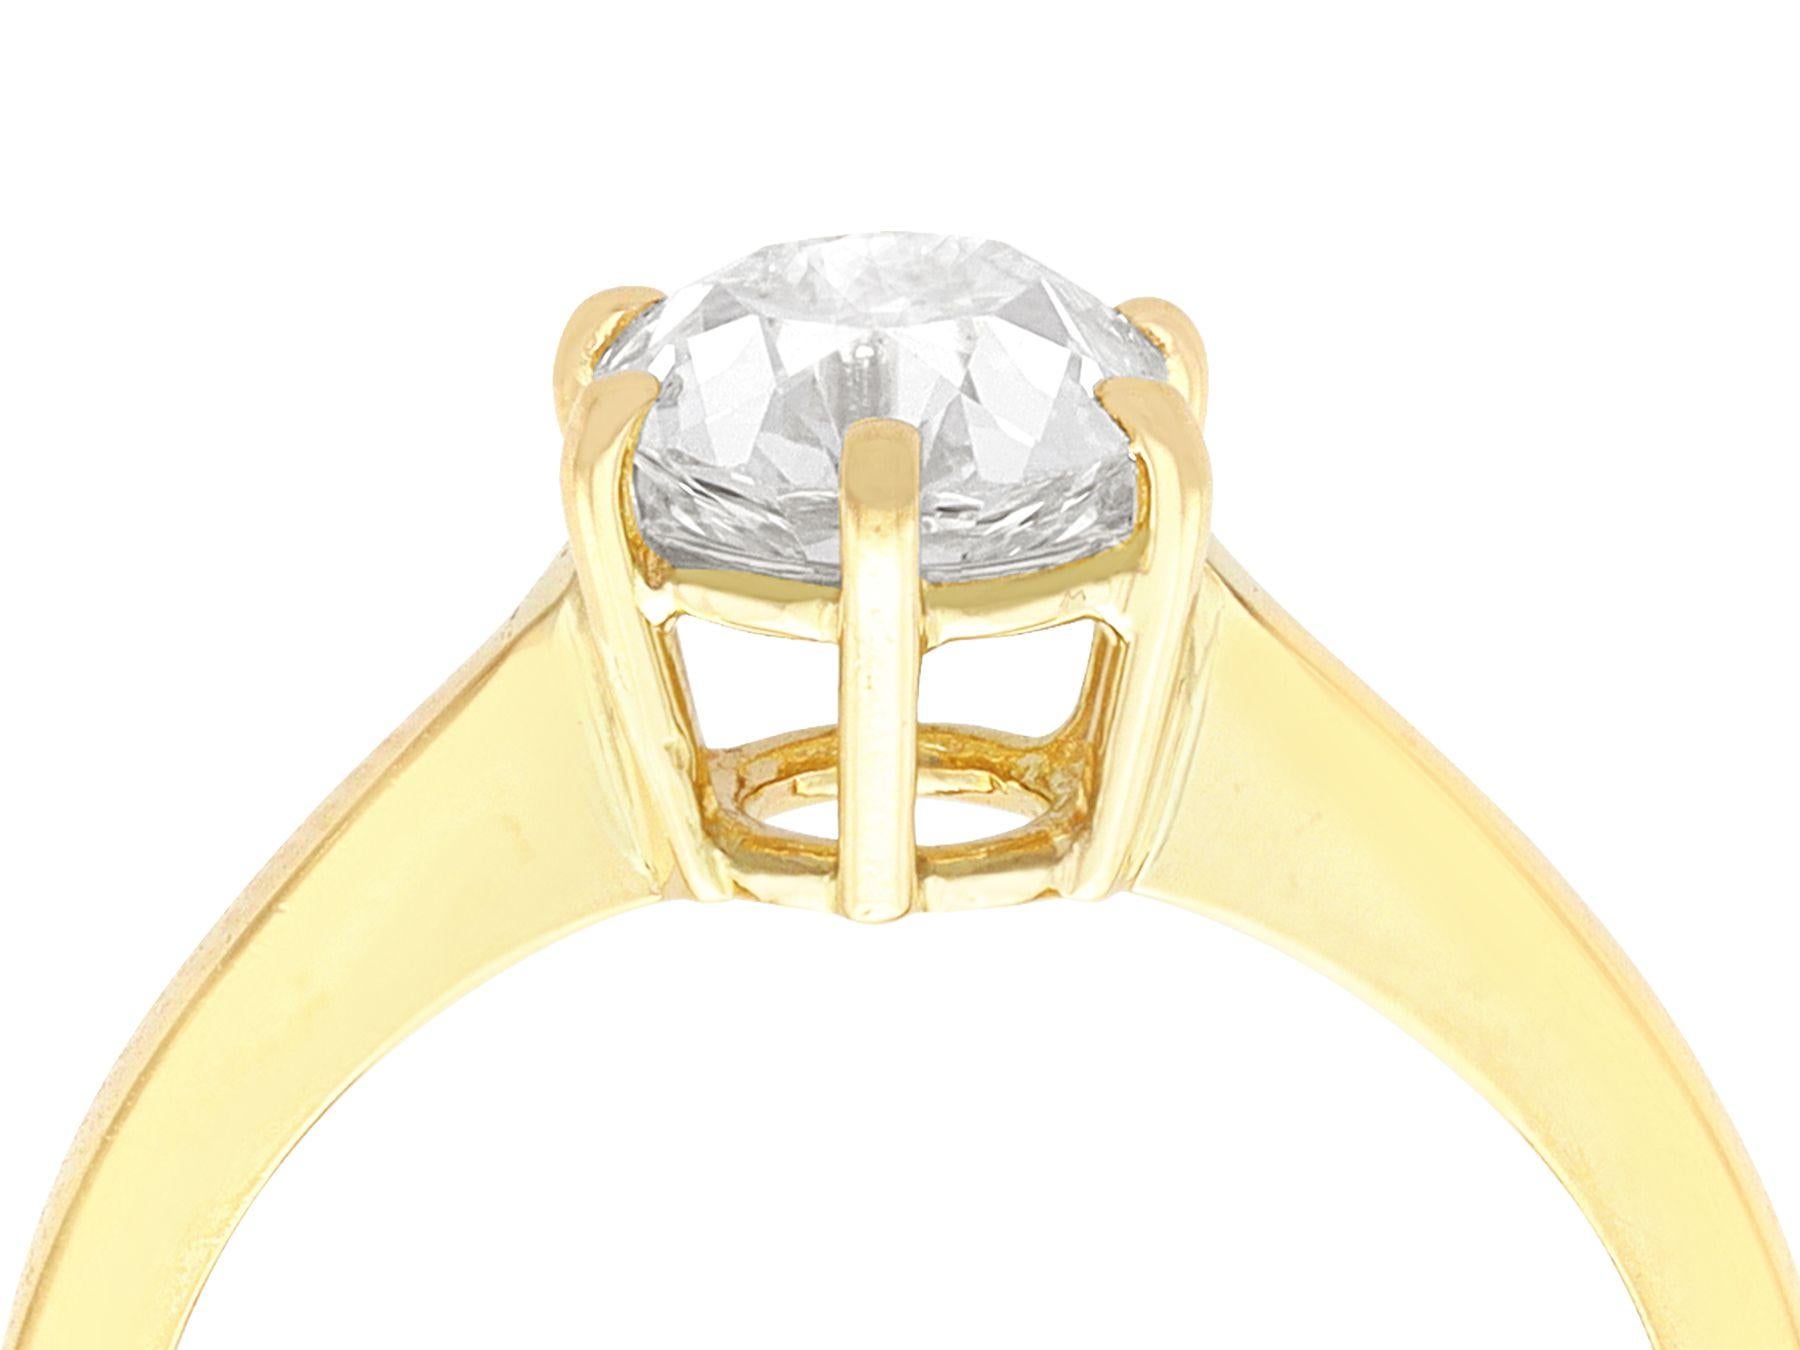 Eine atemberaubende, feine und beeindruckende 1,38 Karat Diamant und 18 Karat Gelbgold Solitär-Ring; Teil unserer vielfältigen Sammlung von viktorianischen Schmuck und Nachlass-Schmuck.

Dieser atemberaubende goldene Solitärring ist aus 18 Karat